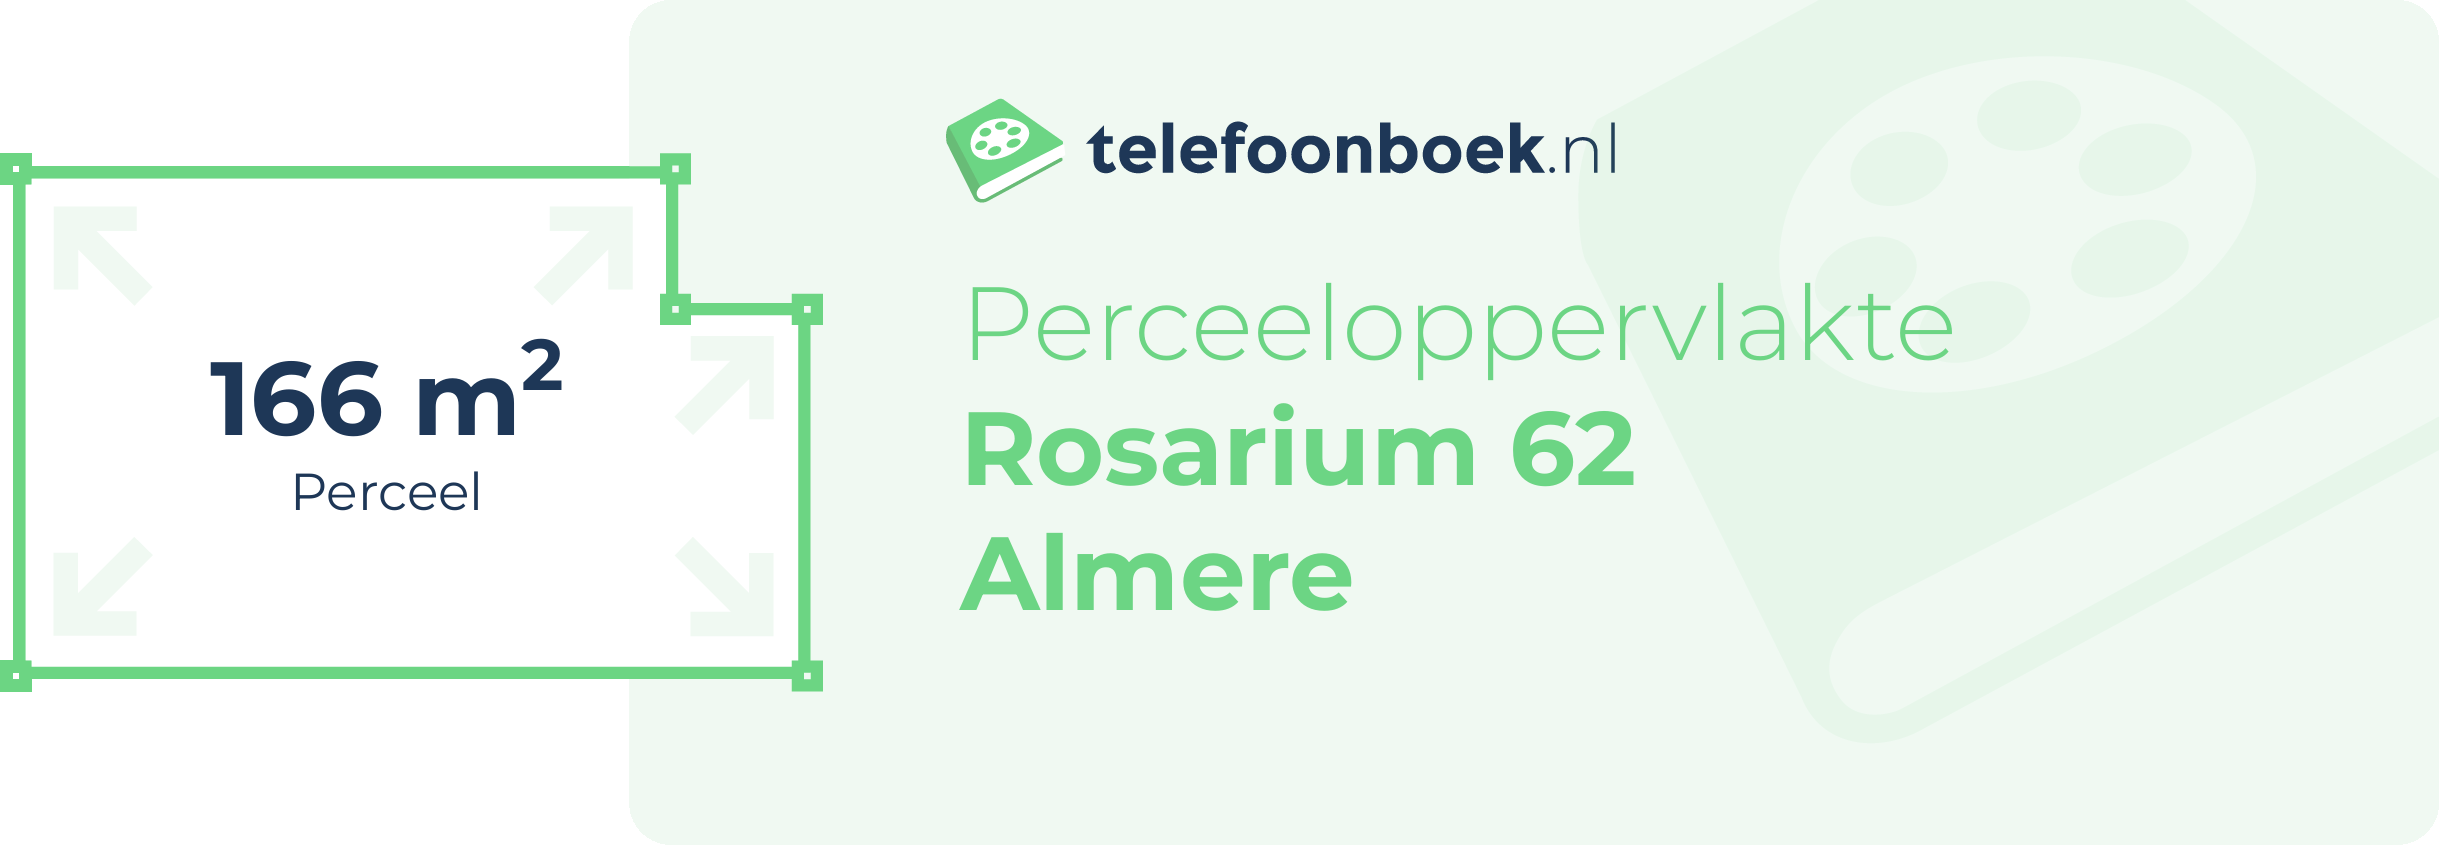 Perceeloppervlakte Rosarium 62 Almere